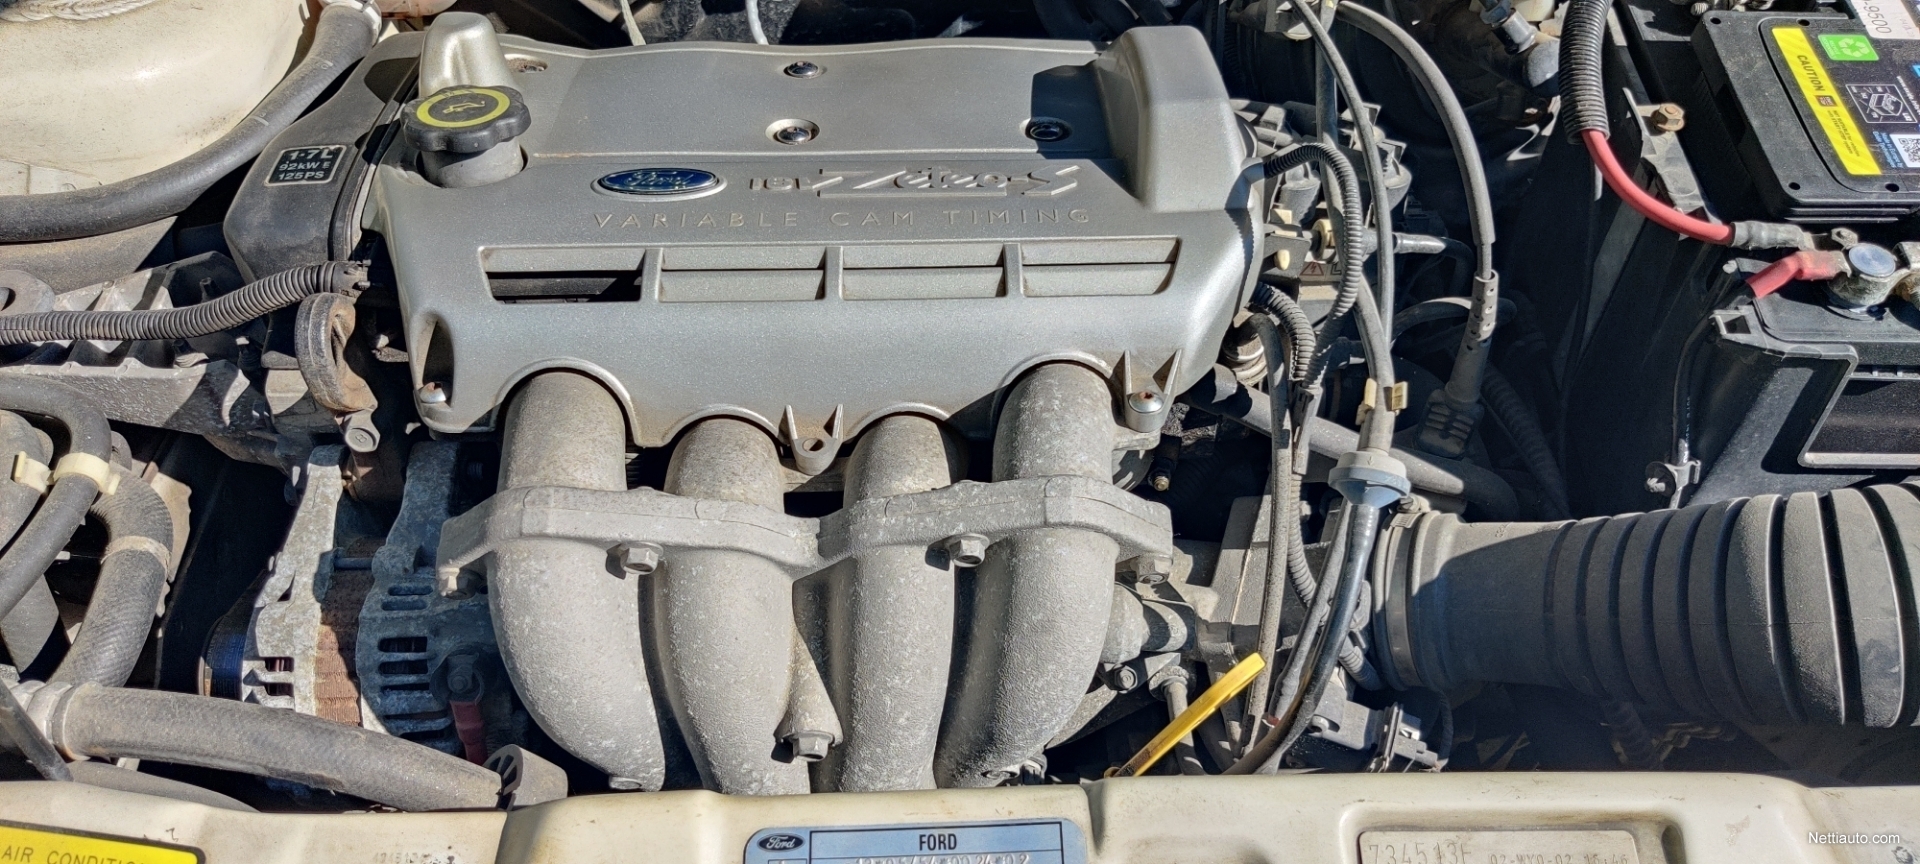 Ford Puma 1.7i 3d Coupé 1998 - Used vehicle - Nettiauto